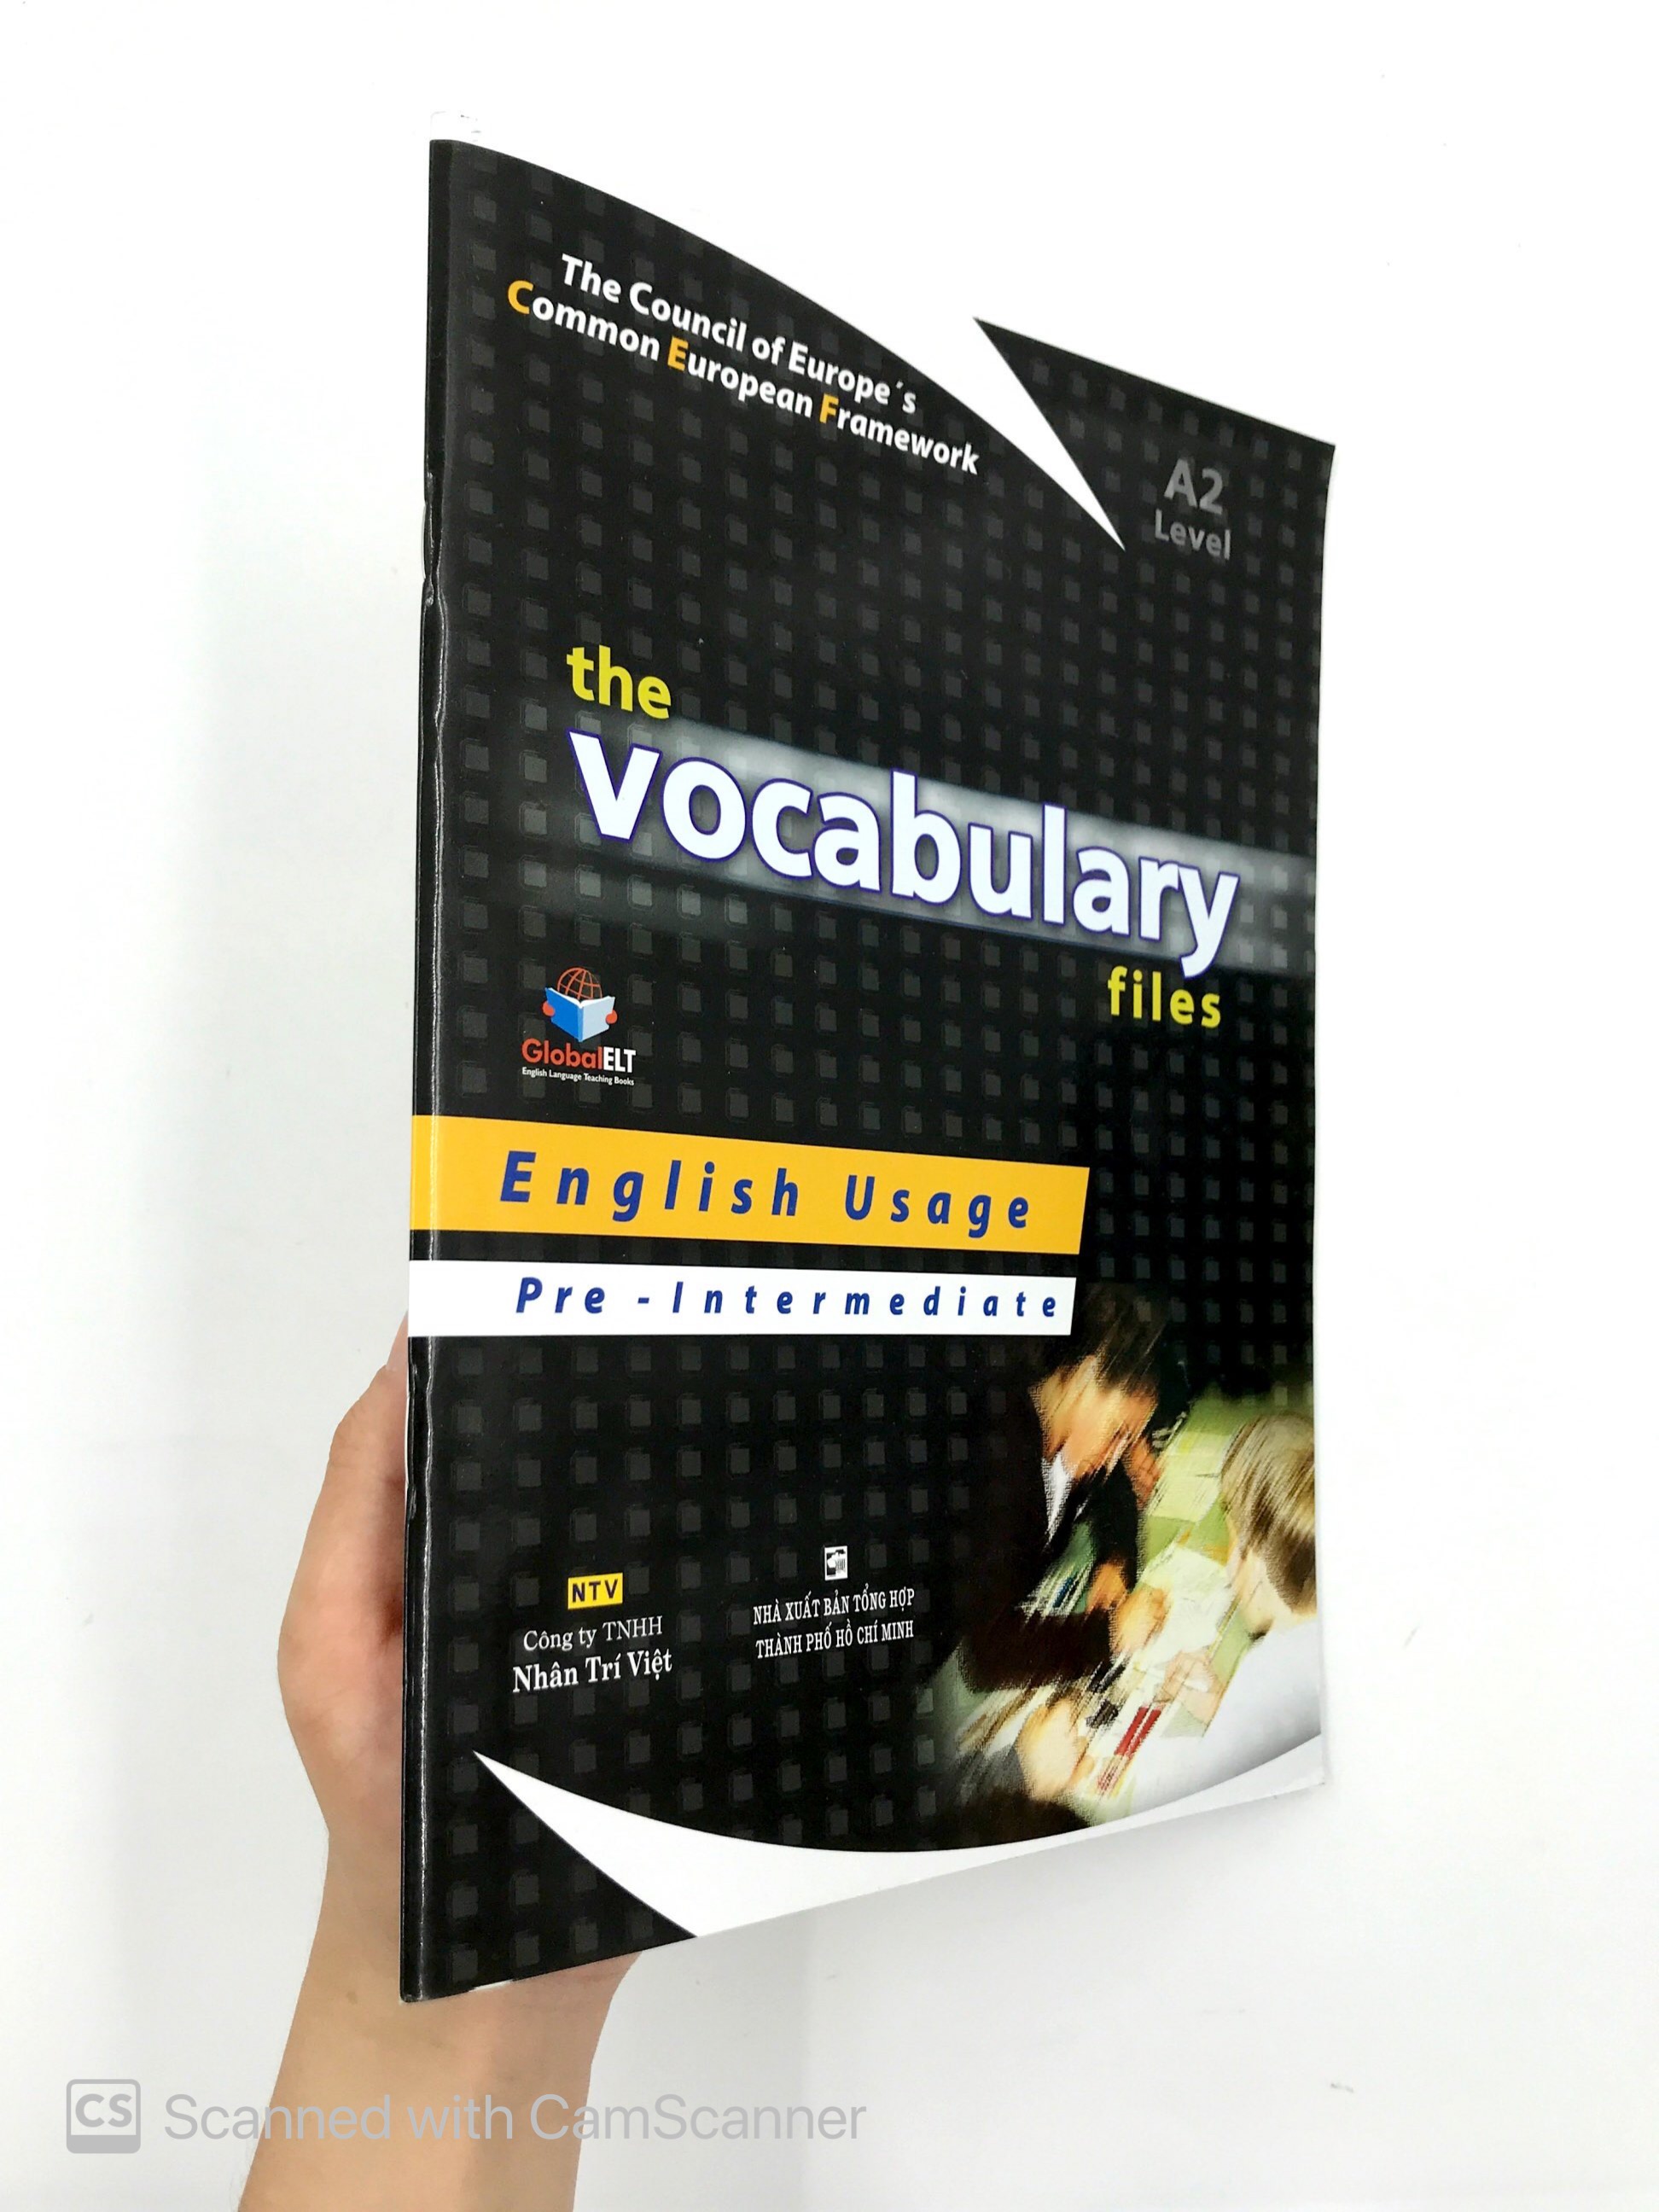 The Vocabulary Files - A2 Level PDF